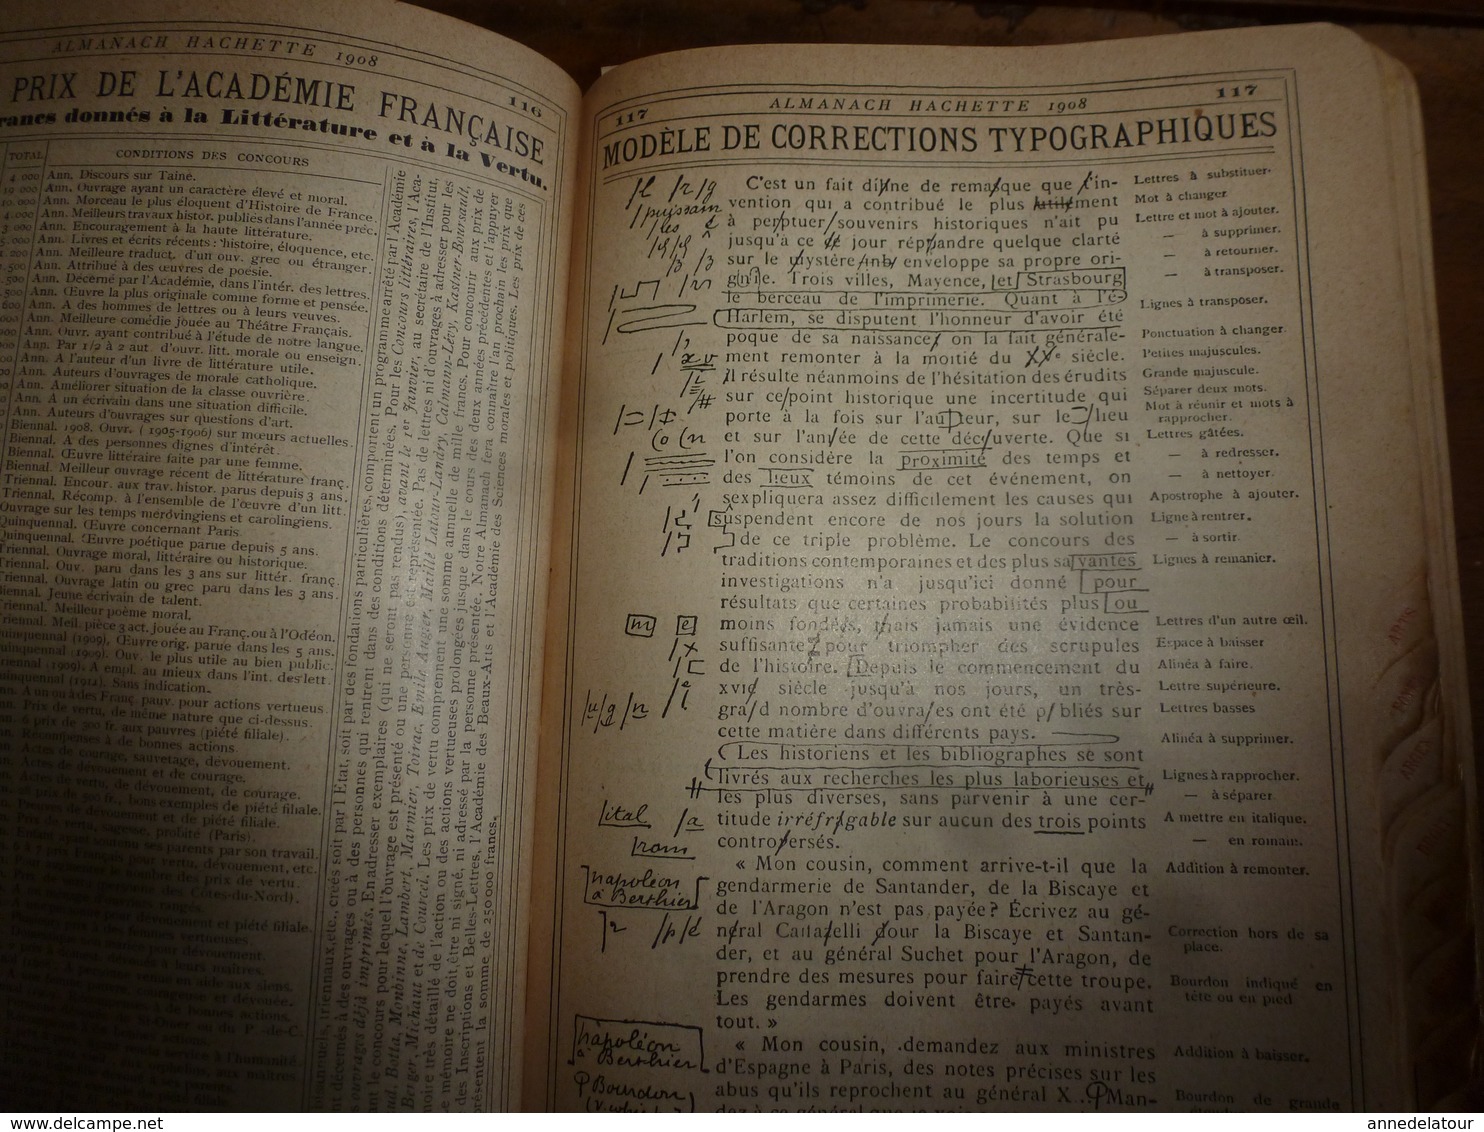 1908 Maroc;Champignons;Nuisibles à la vigne(édit. luxe) ALMANACH HACHETTE(Encyclopédie Populaire de la Vie Pratique) etc